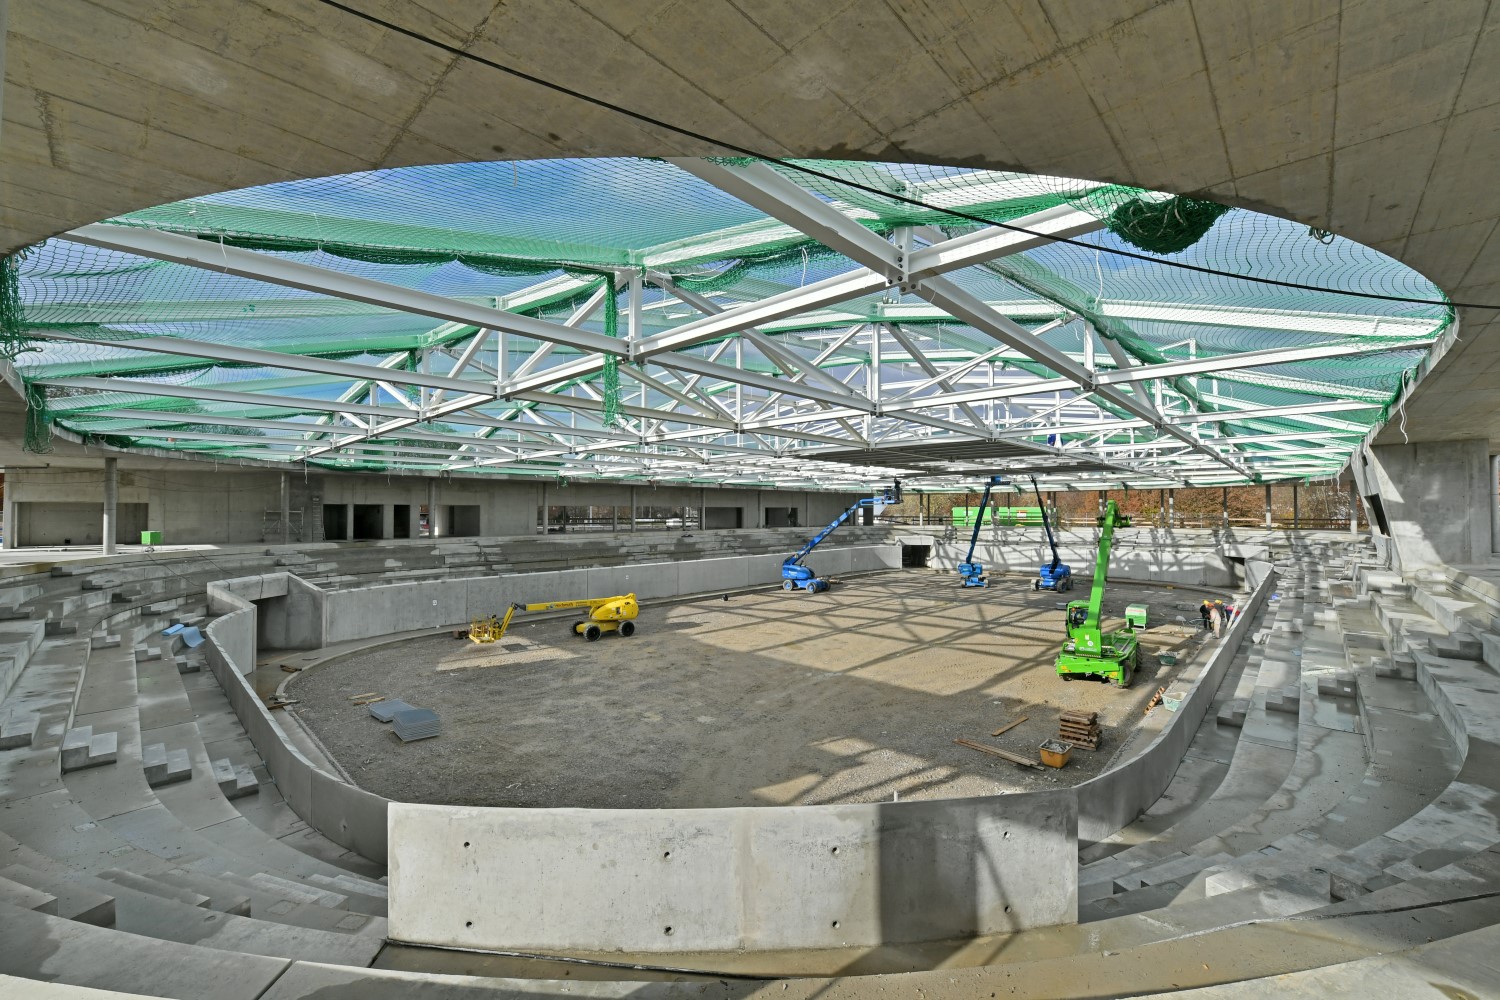 Blick in der Innere des neuen Kaufbeurer Eisstadions
Bild: Marketingagentur Tenambergen